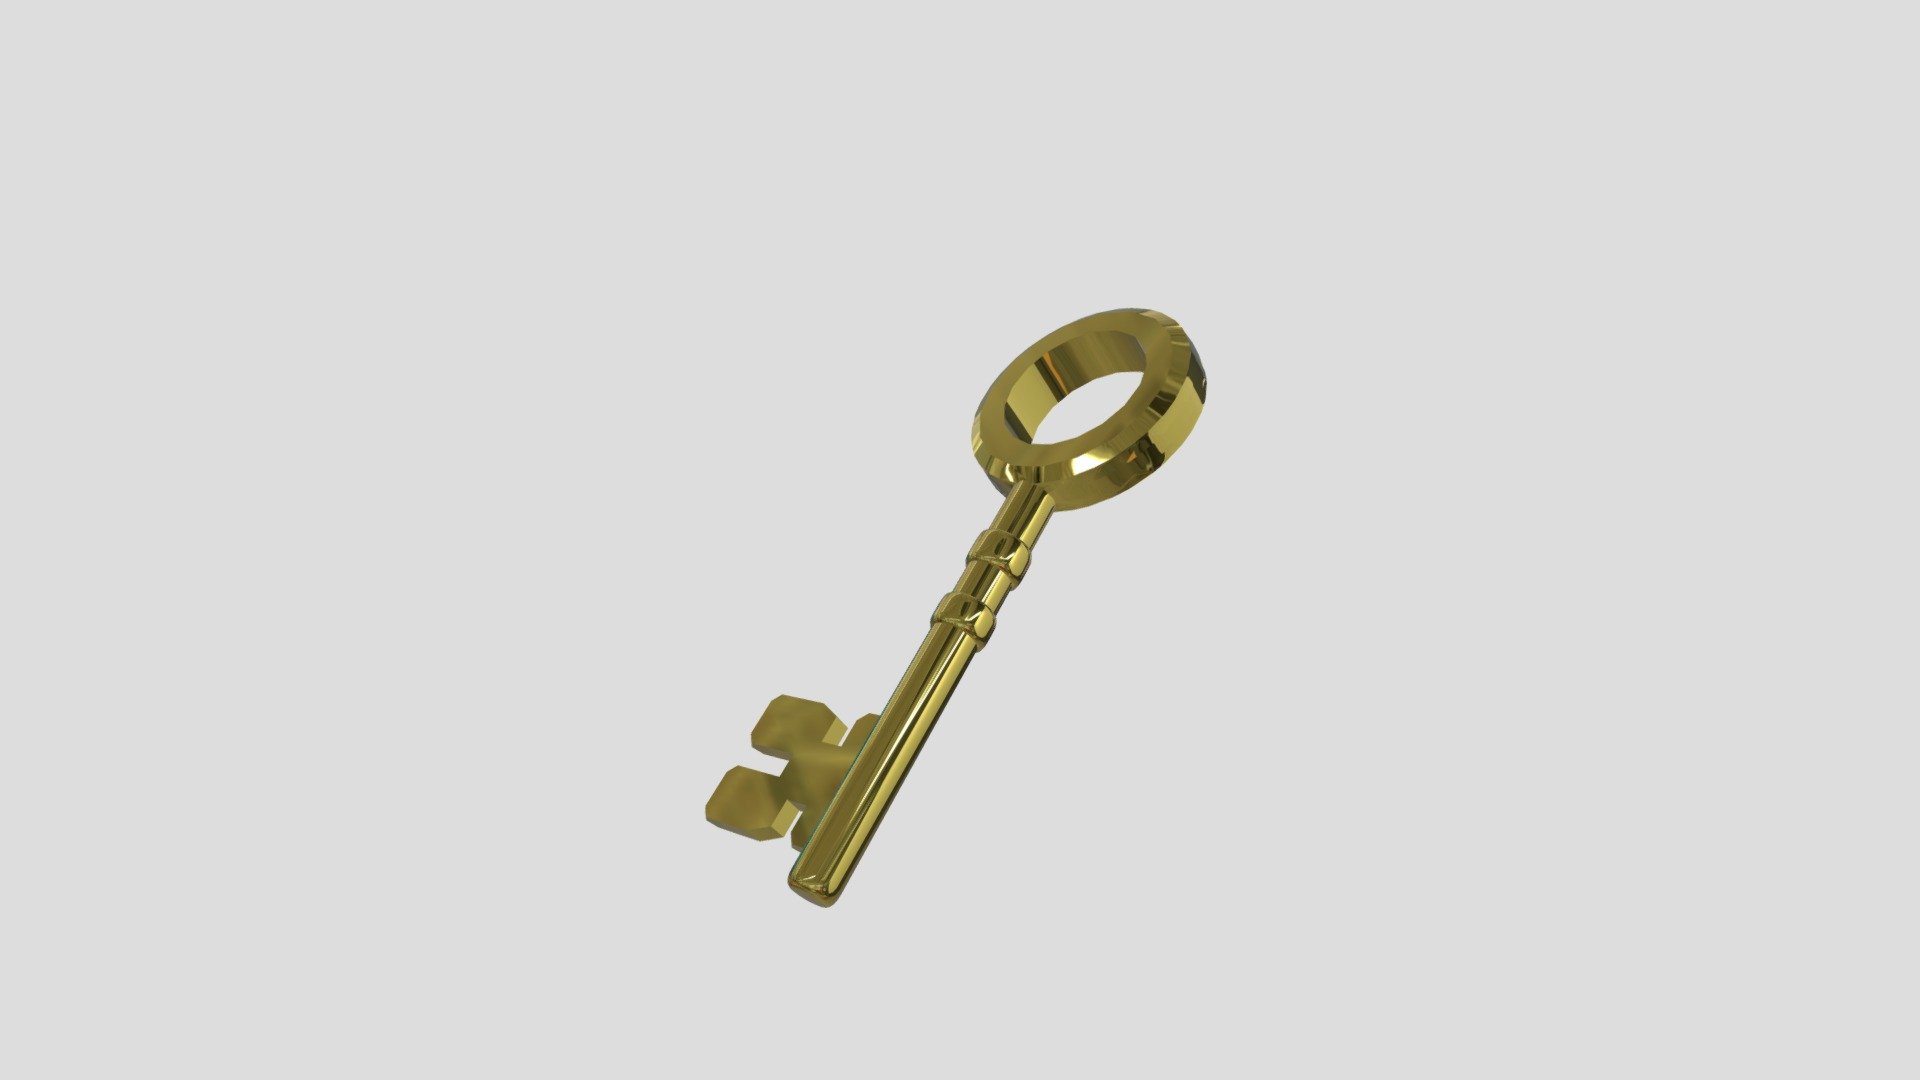 Gold Key - 3D model by Bill Bui (@Billbui) 3d model